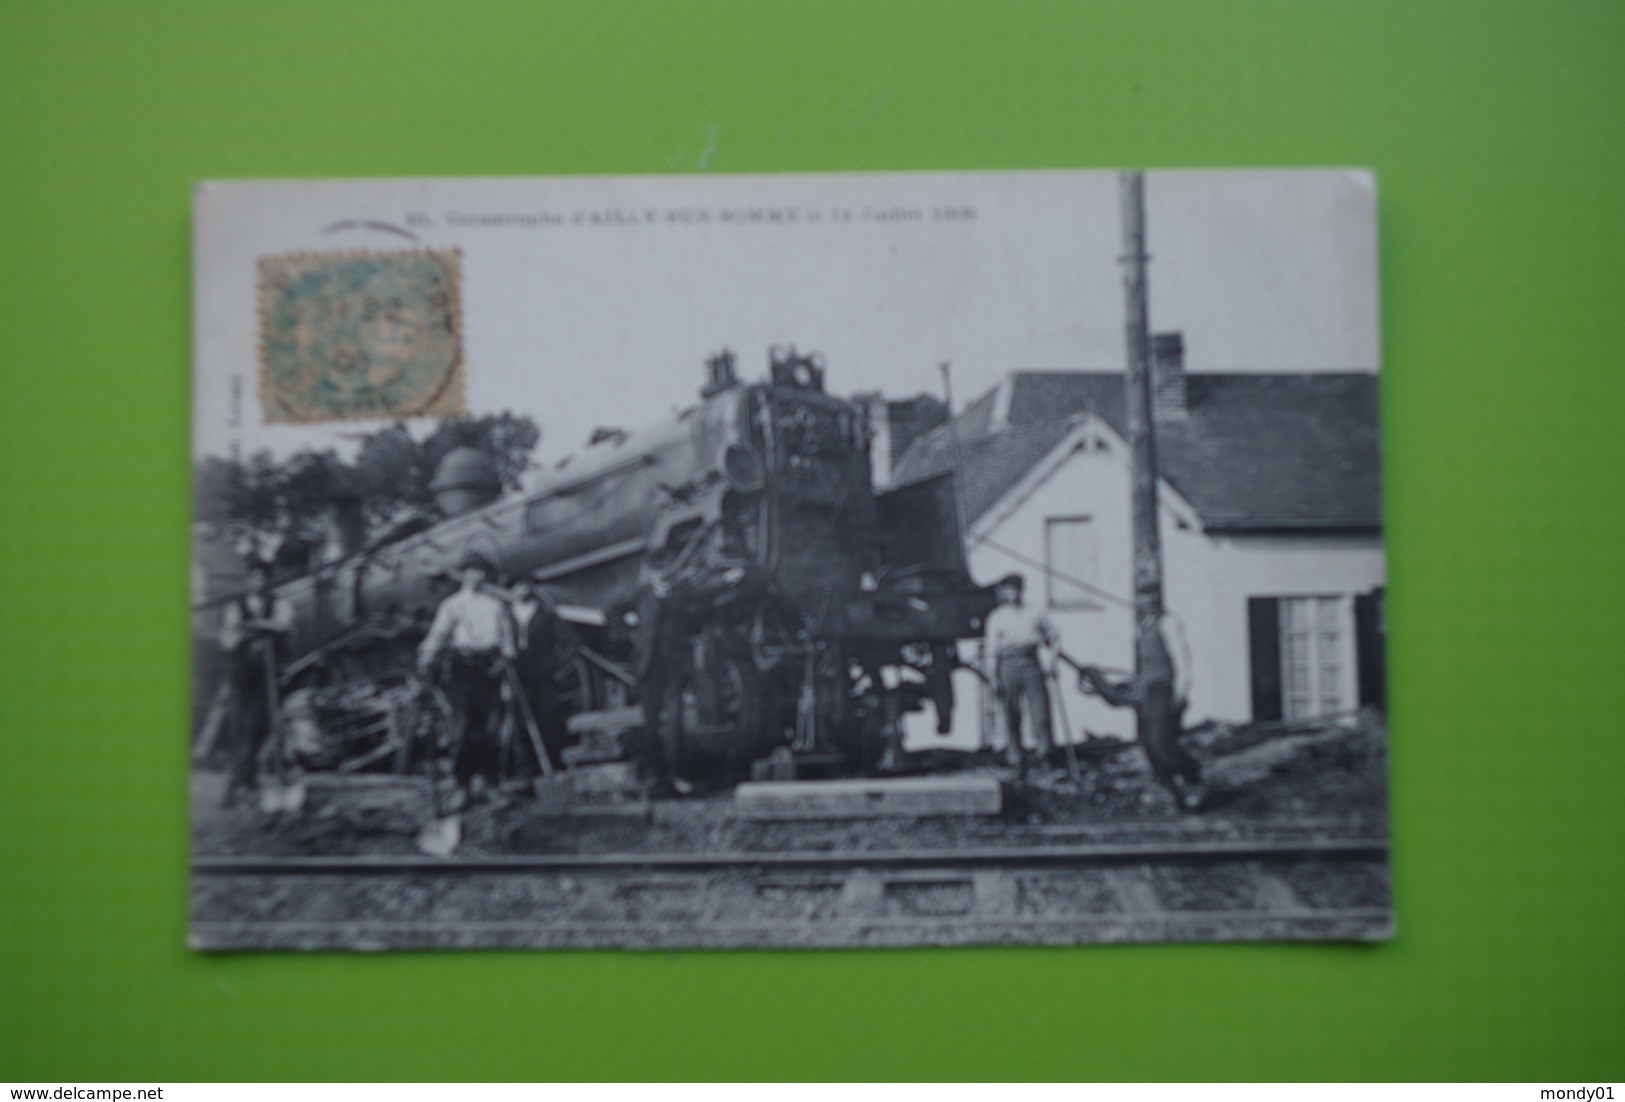 4-971 CPA Train Accident Chemin De Fer Ailly Sur Somme 1906 Flixecourt Machine à Vapeur Relitto Treno Ren Descarrilado - Accidents & Road Safety